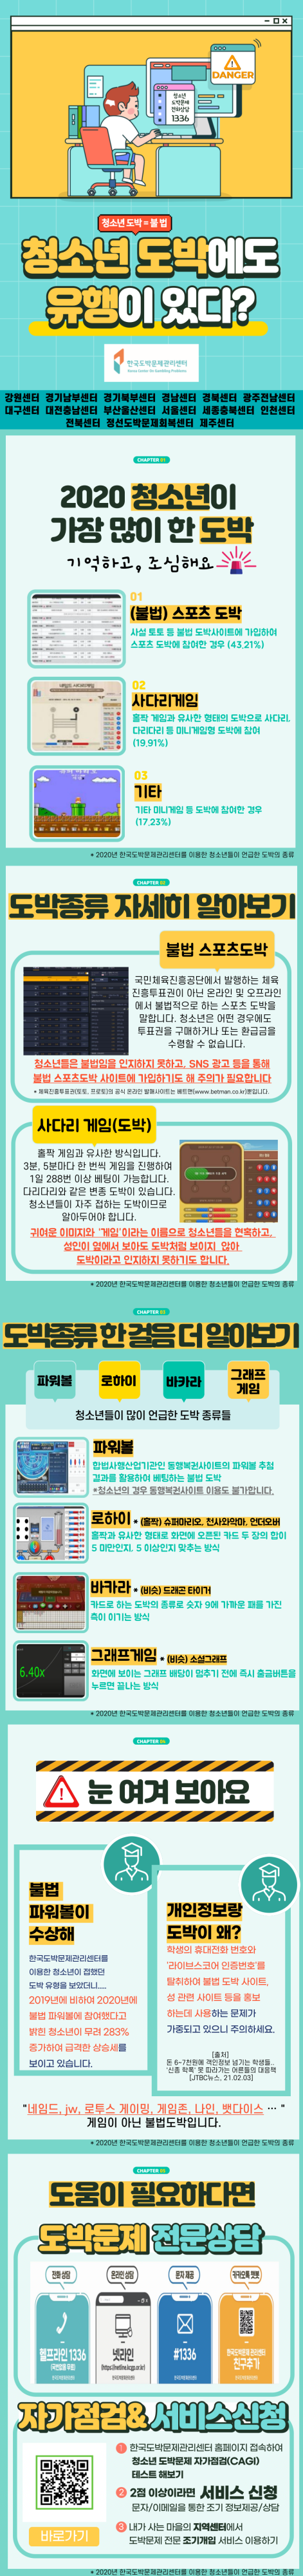 카드뉴스(2월)_도박유형_합본